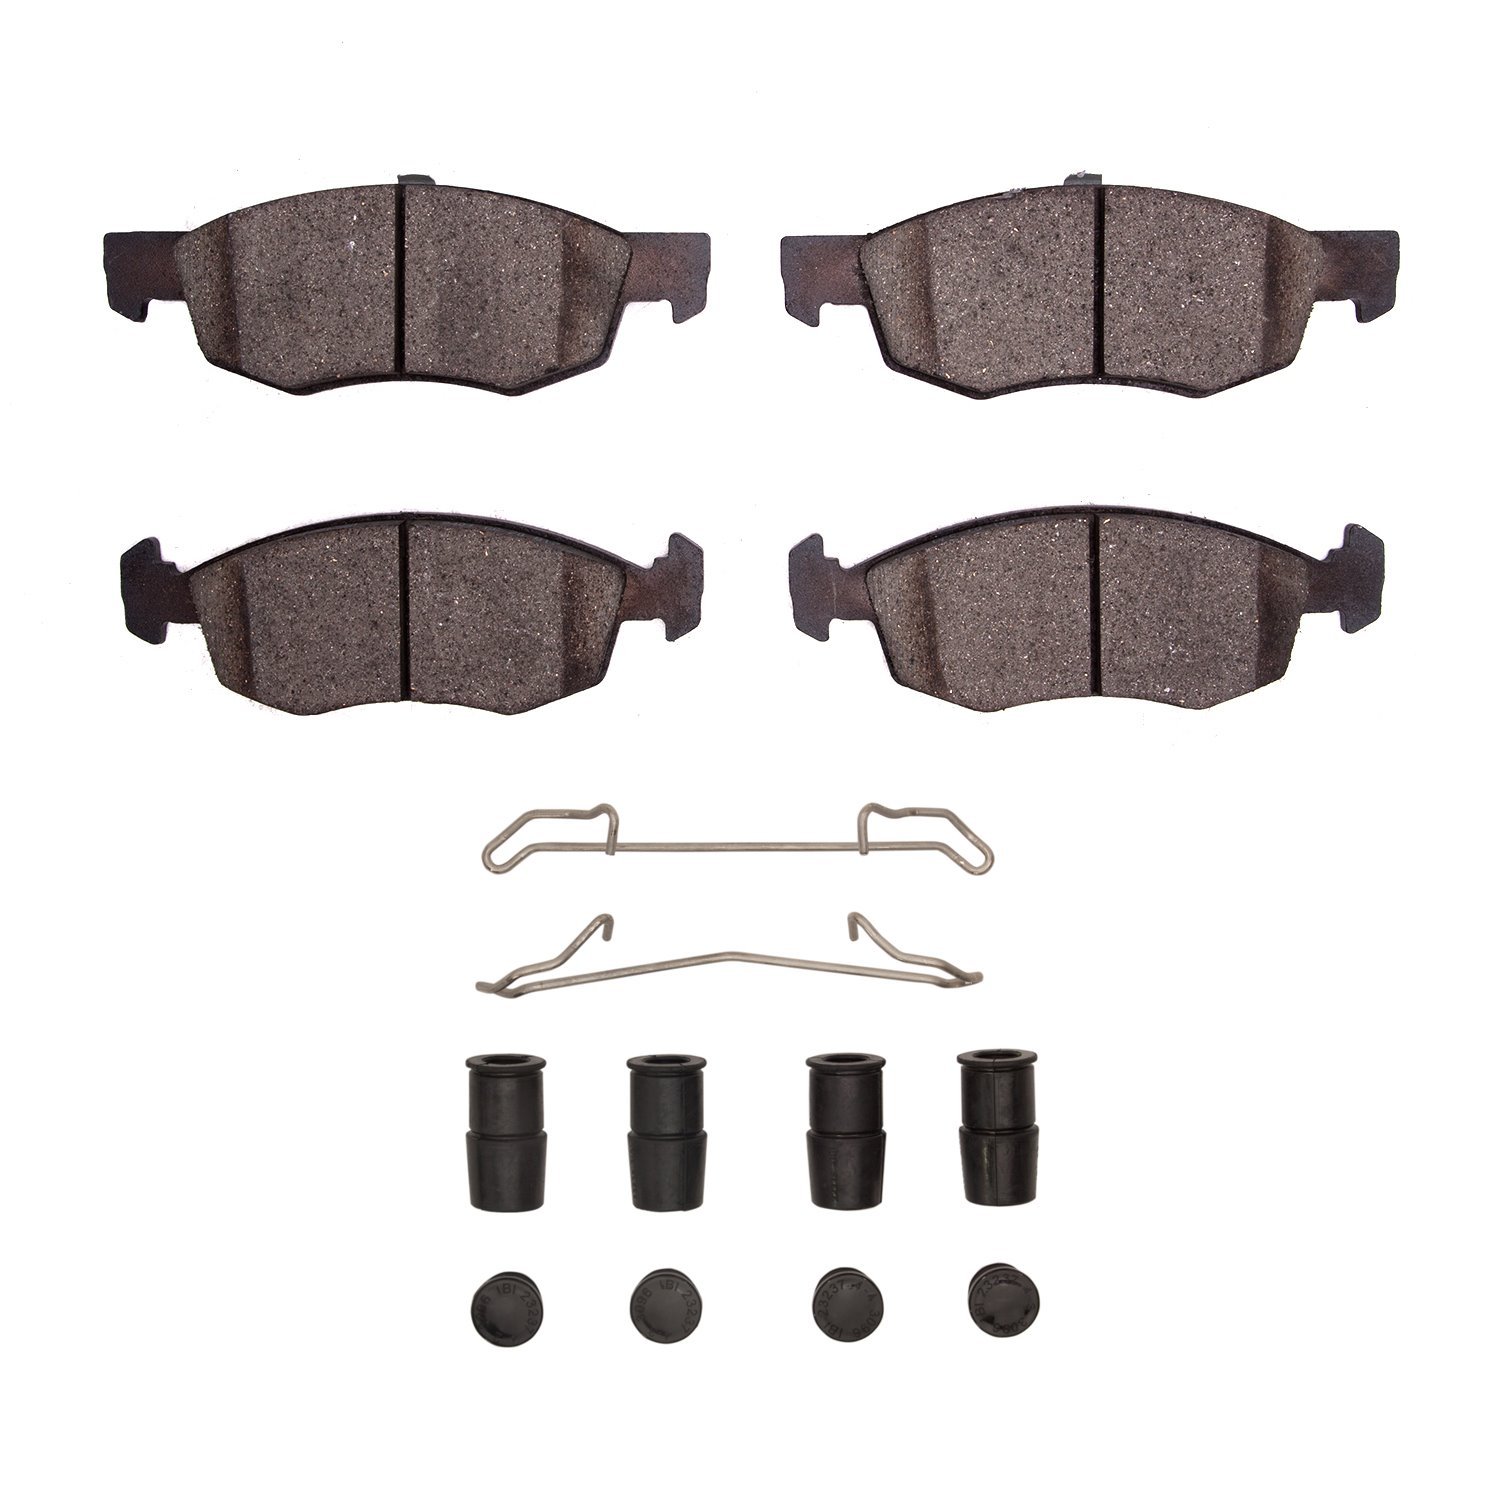 1311-1906-01 3000-Series Semi-Metallic Brake Pads & Hardware Kit, 2015-2018 Mopar, Position: Front